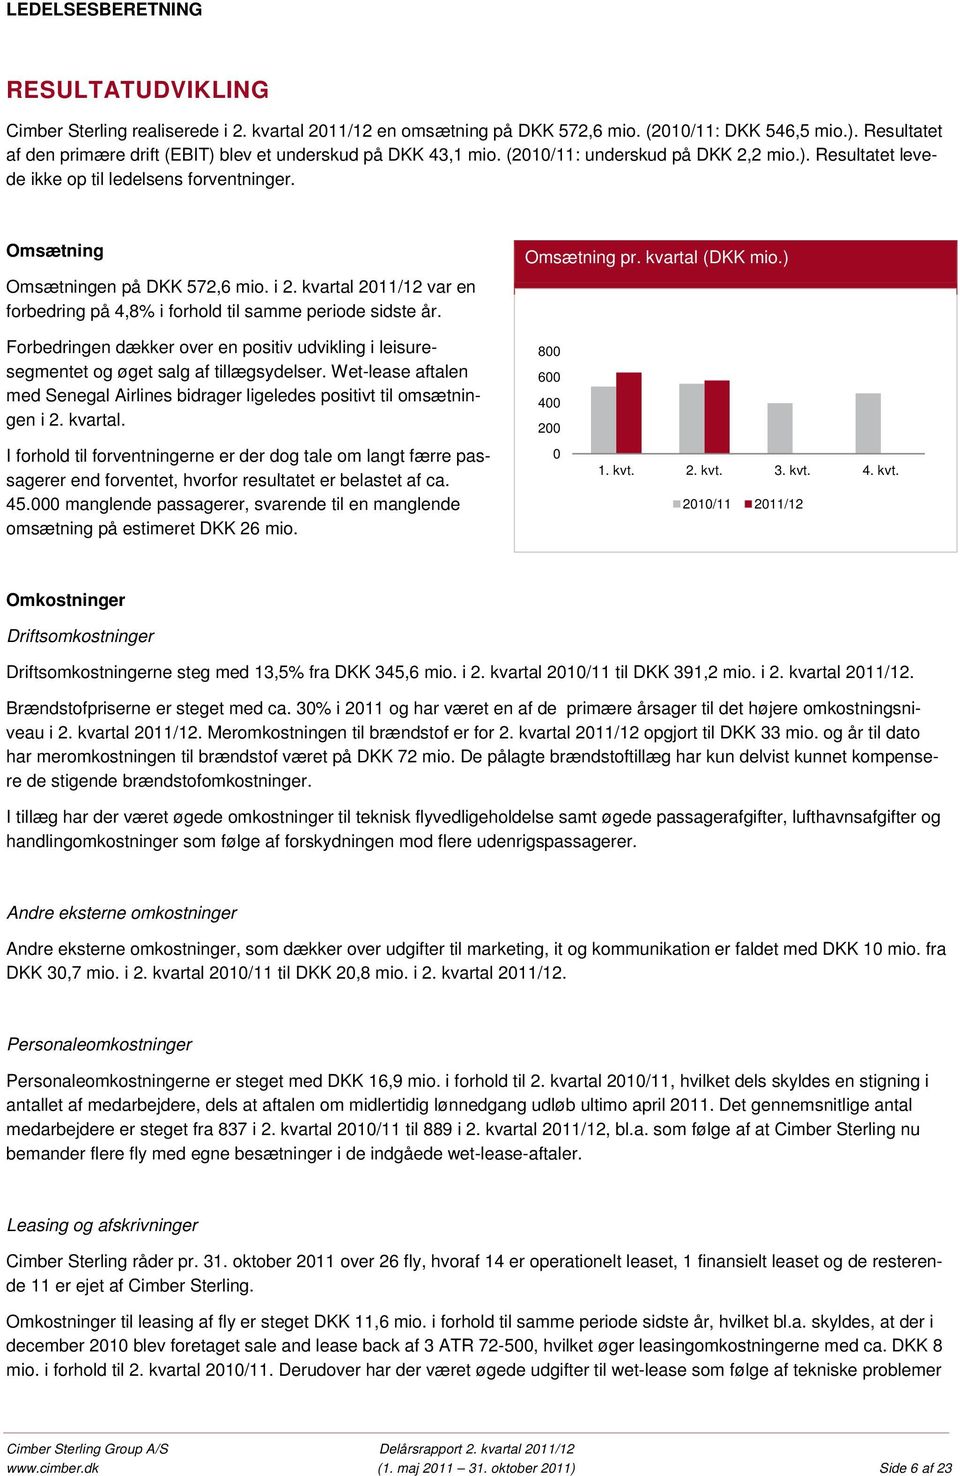 Omsætning Omsætningen på DKK 572,6 mio. i 2. kvartal 2011/12 var en forbedring på 4,8% i forhold til samme periode sidste år. Omsætning pr. kvartal (DKK mio.